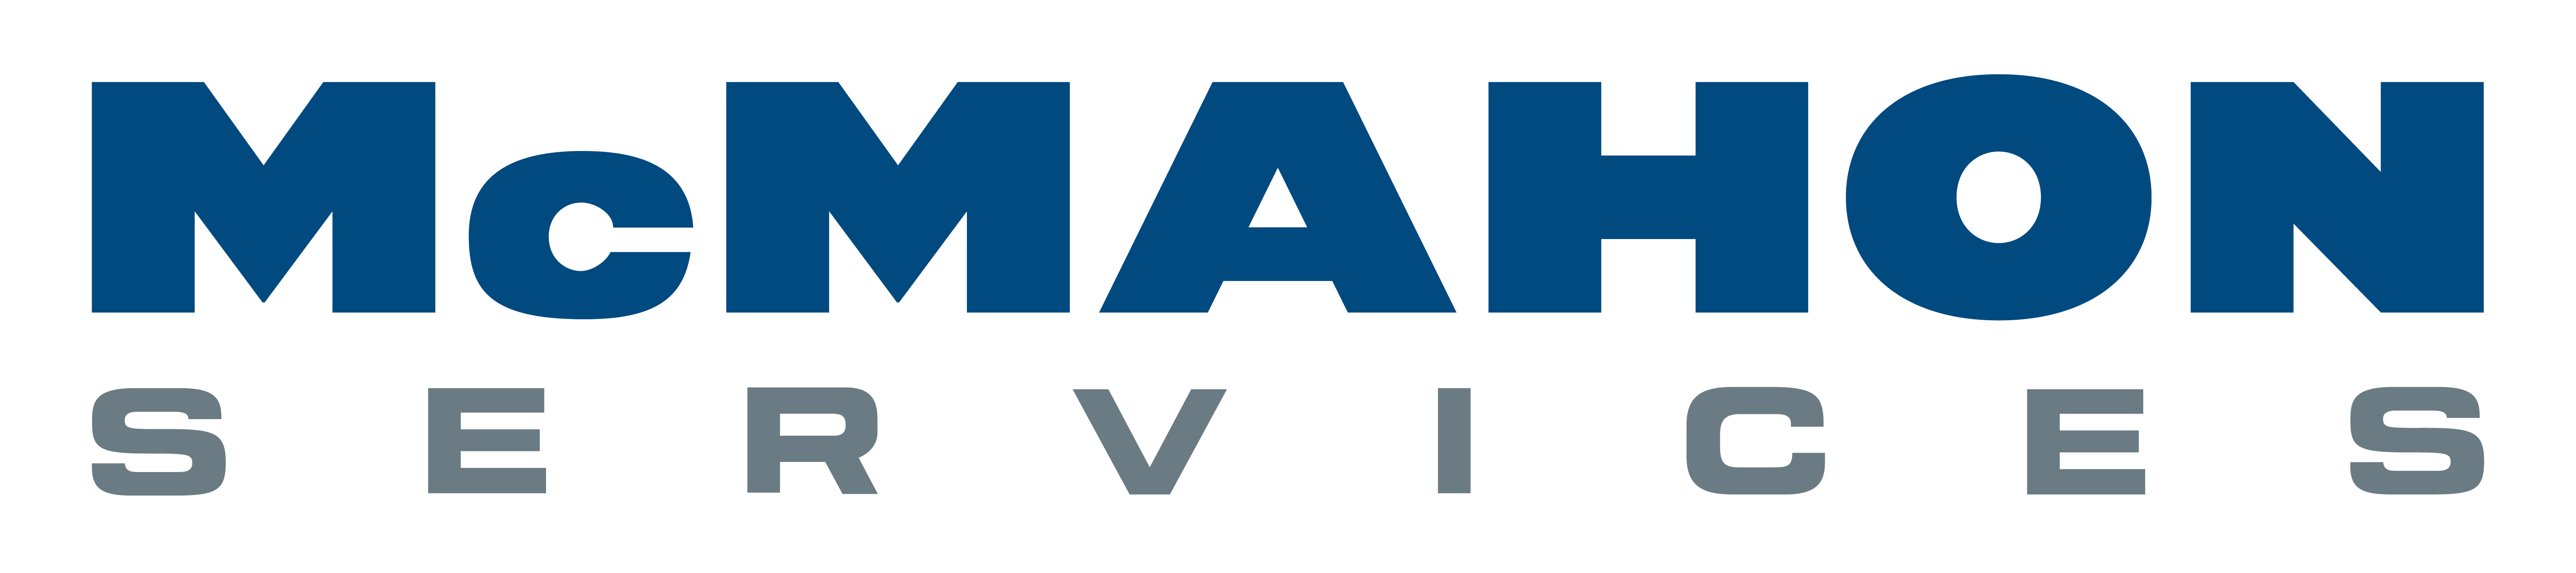 McMahon Services logo